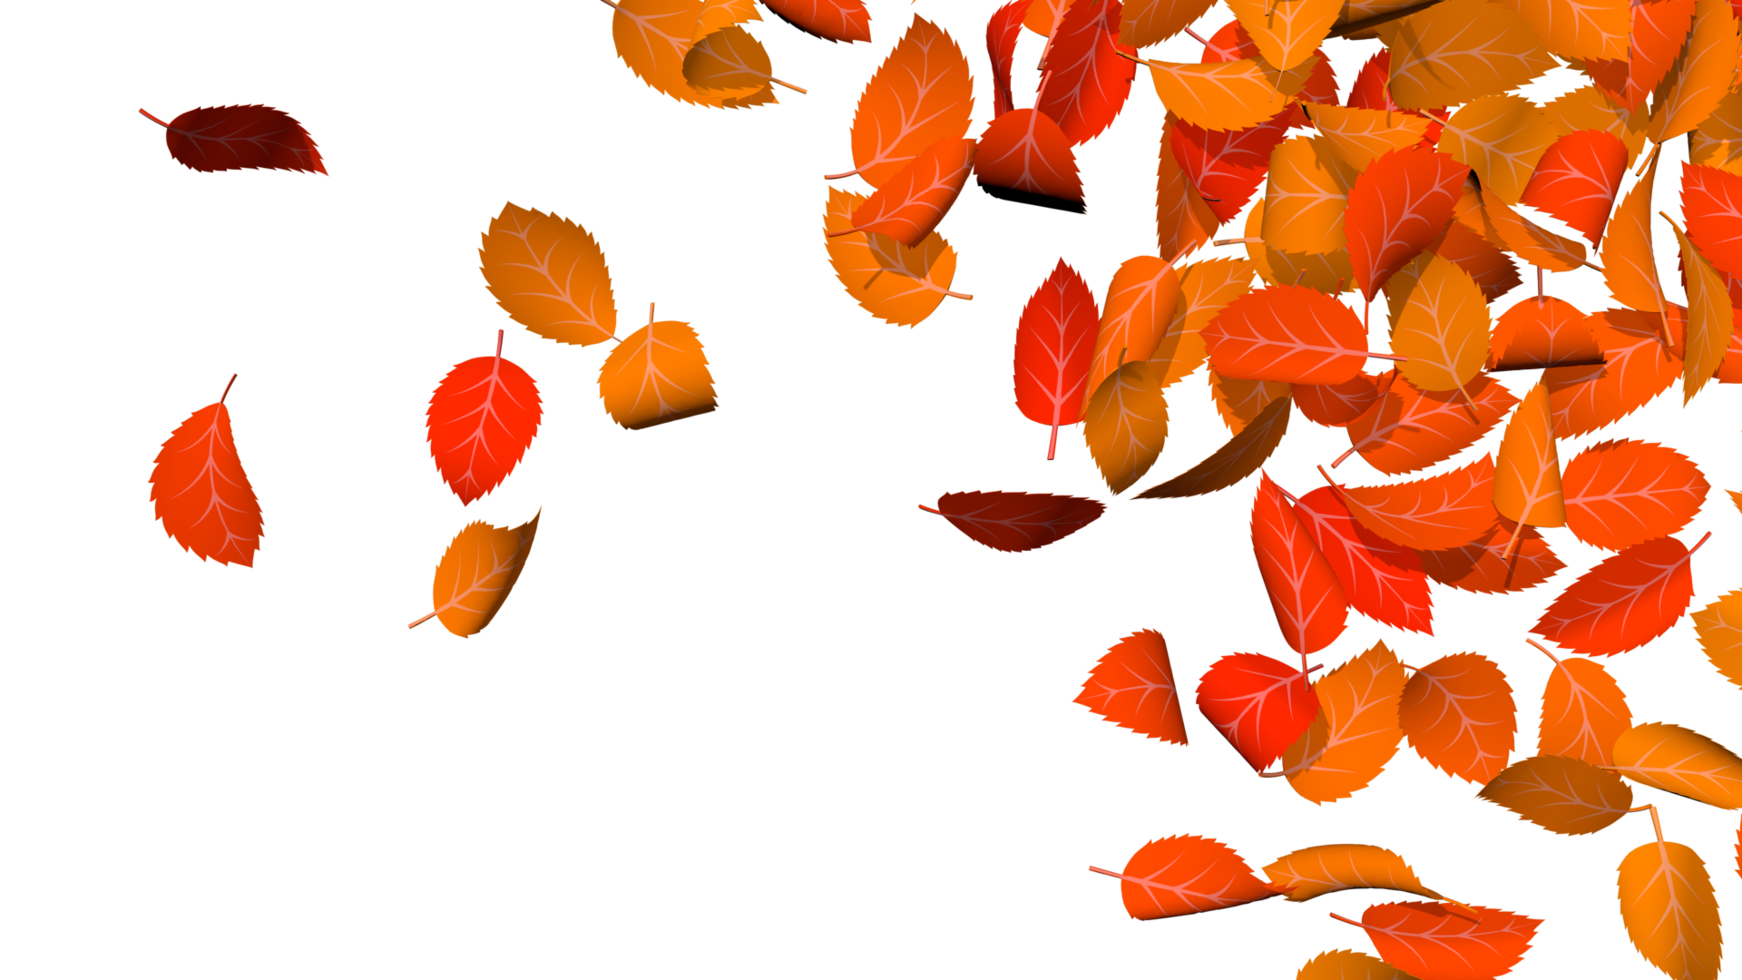 autunno le foglie sparpagliato colorato arancia e giallo tema, ringraziamento, 3d interpretazione png